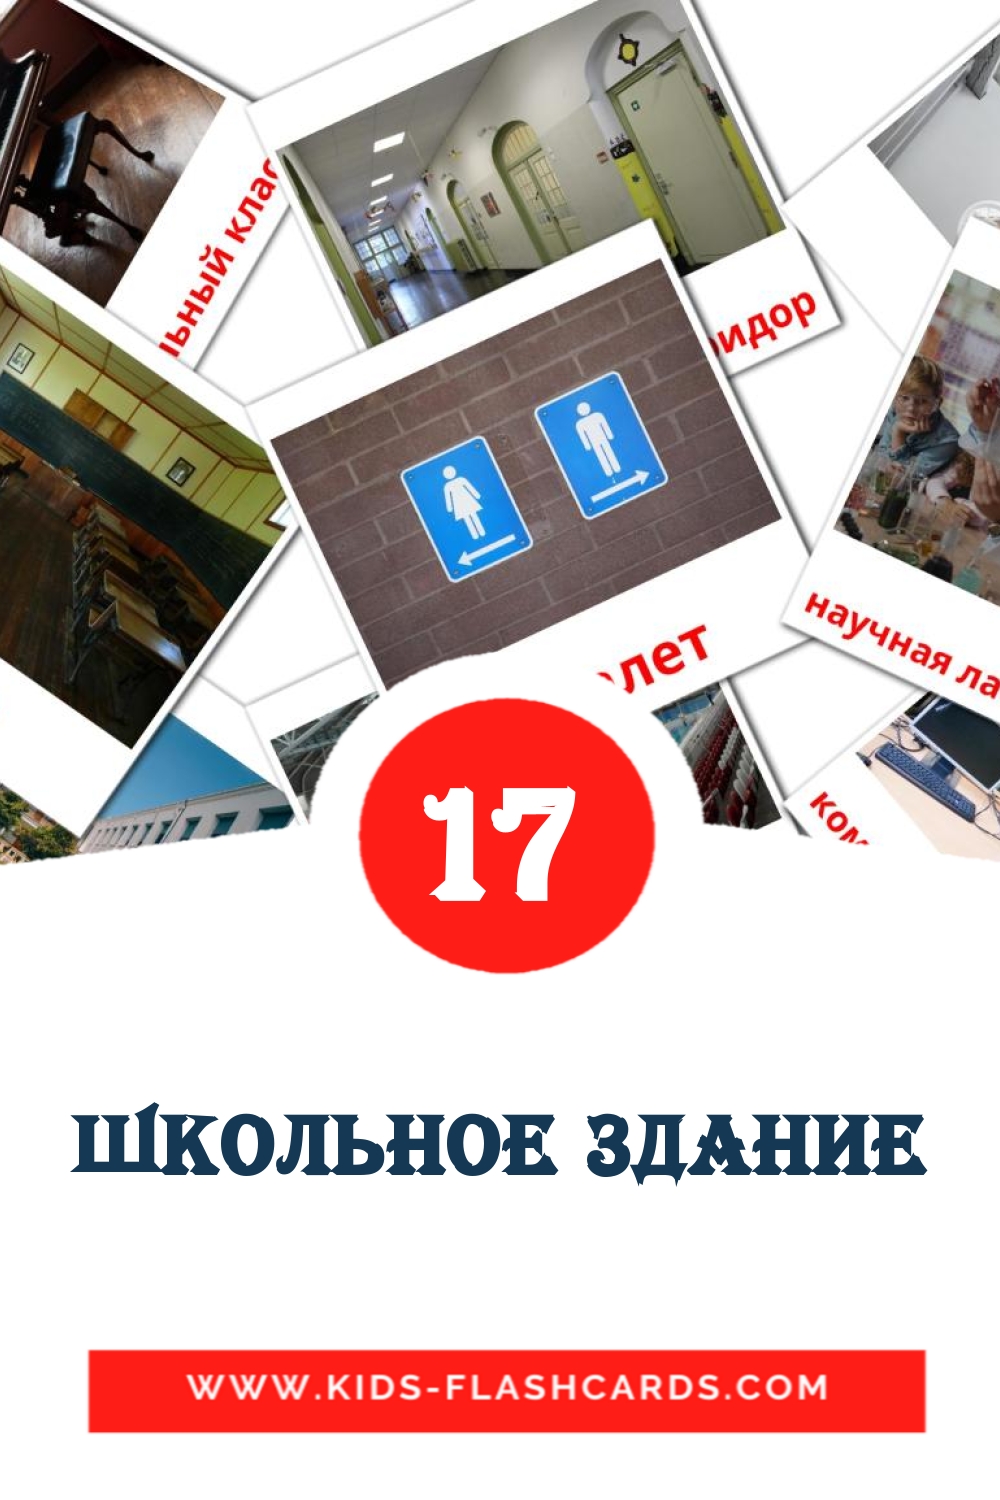 17 Cartões com Imagens de Школьное здание para Jardim de Infância em russas